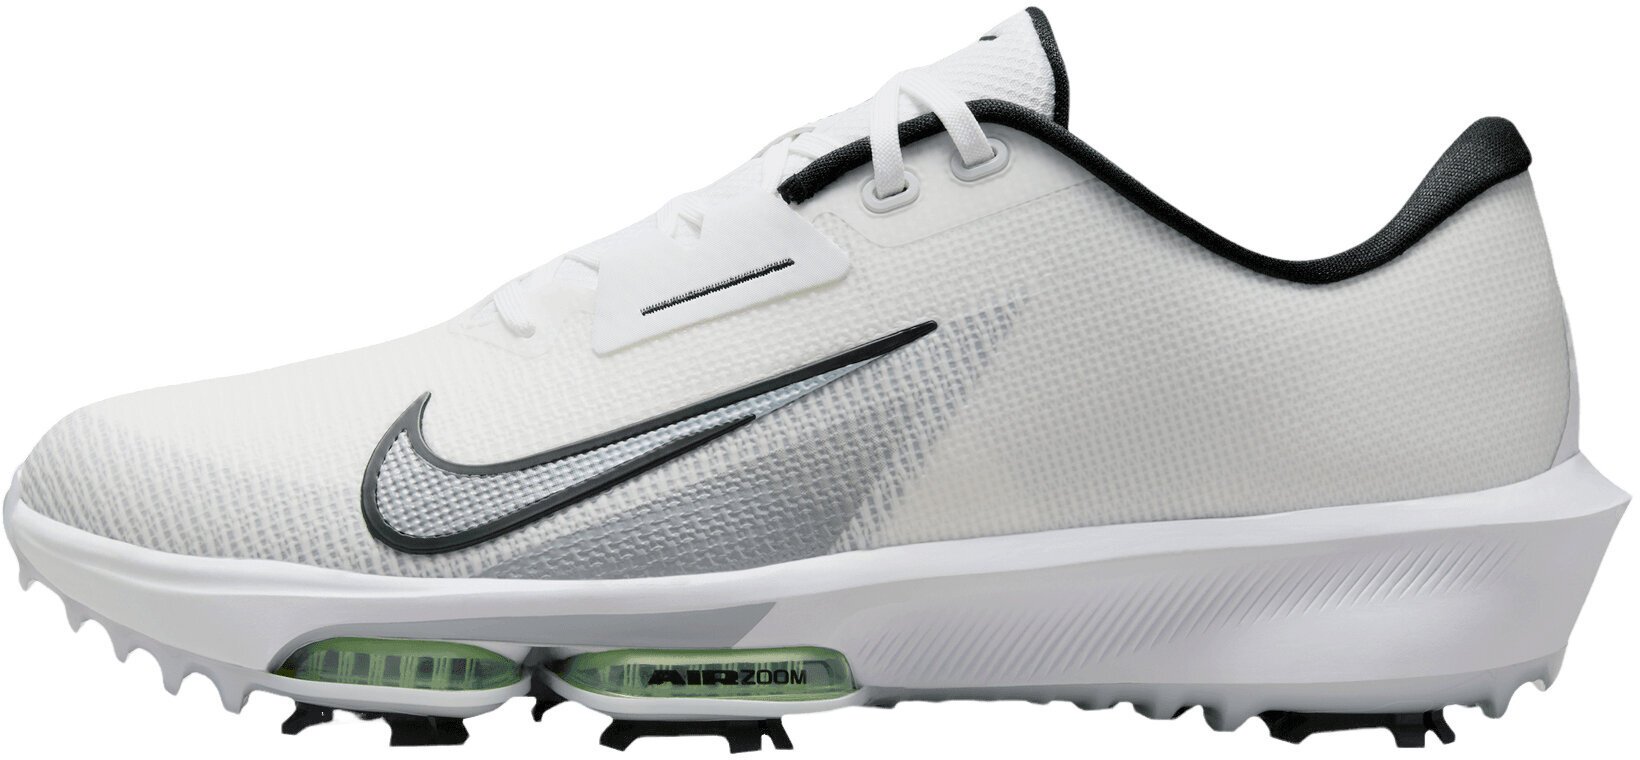 Chaussures de golf pour hommes Nike Air Zoom Infinity Tour Next 2 Unisex Golf Shoes White/Black/Vapor Green/Pure Platinum 45,5